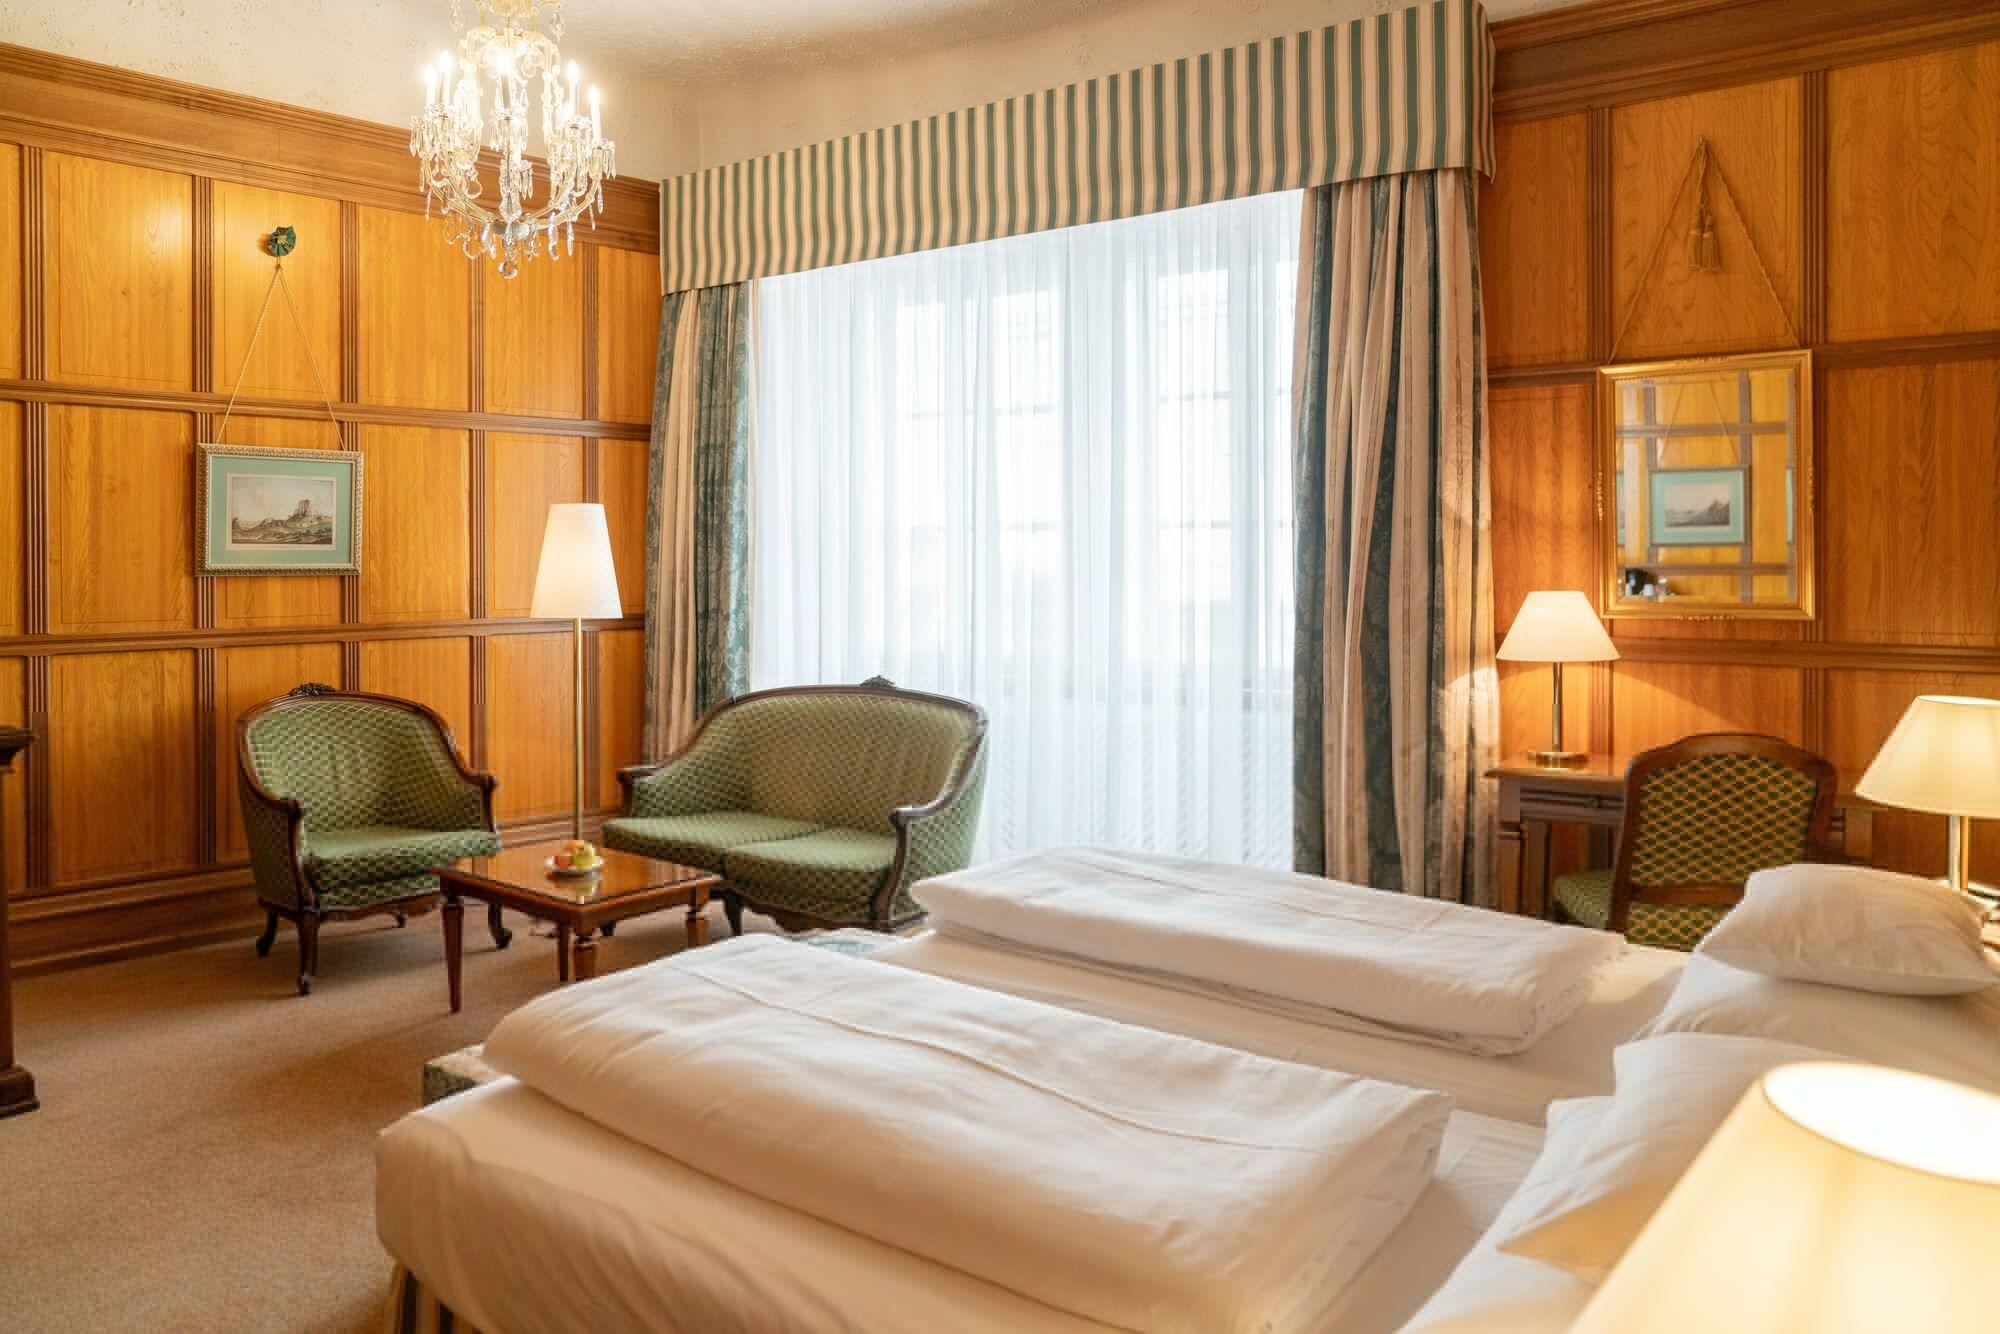 Hotel Konig Von Ungarn Vienna Luaran gambar